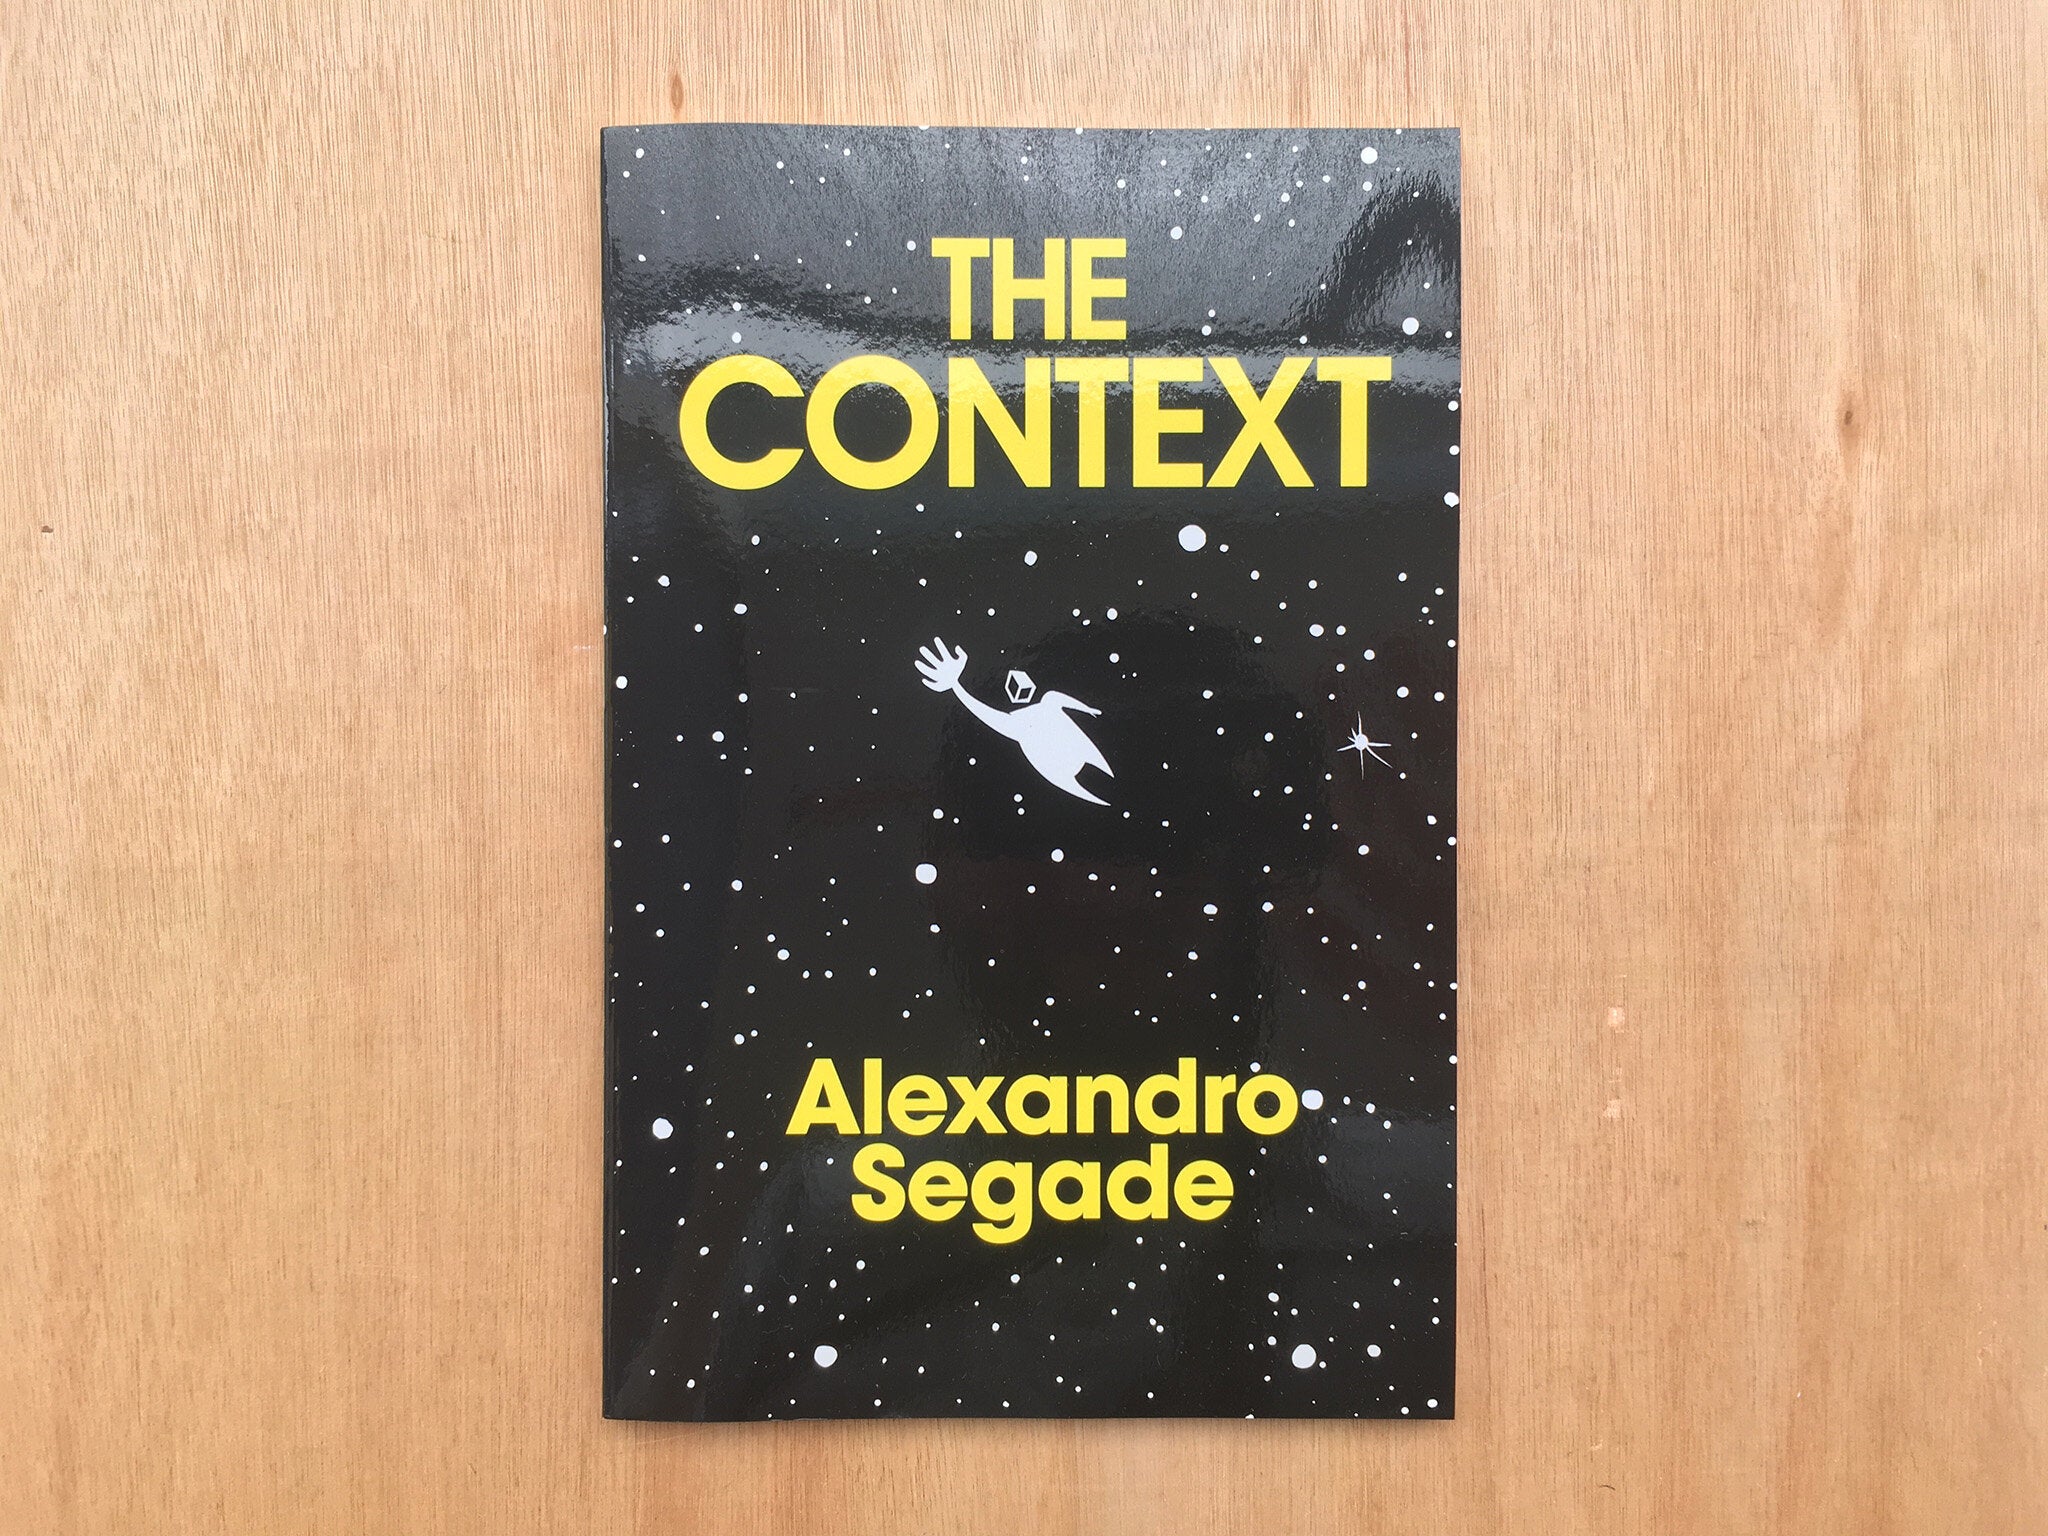 THE CONTEXT by Alexandro Segade